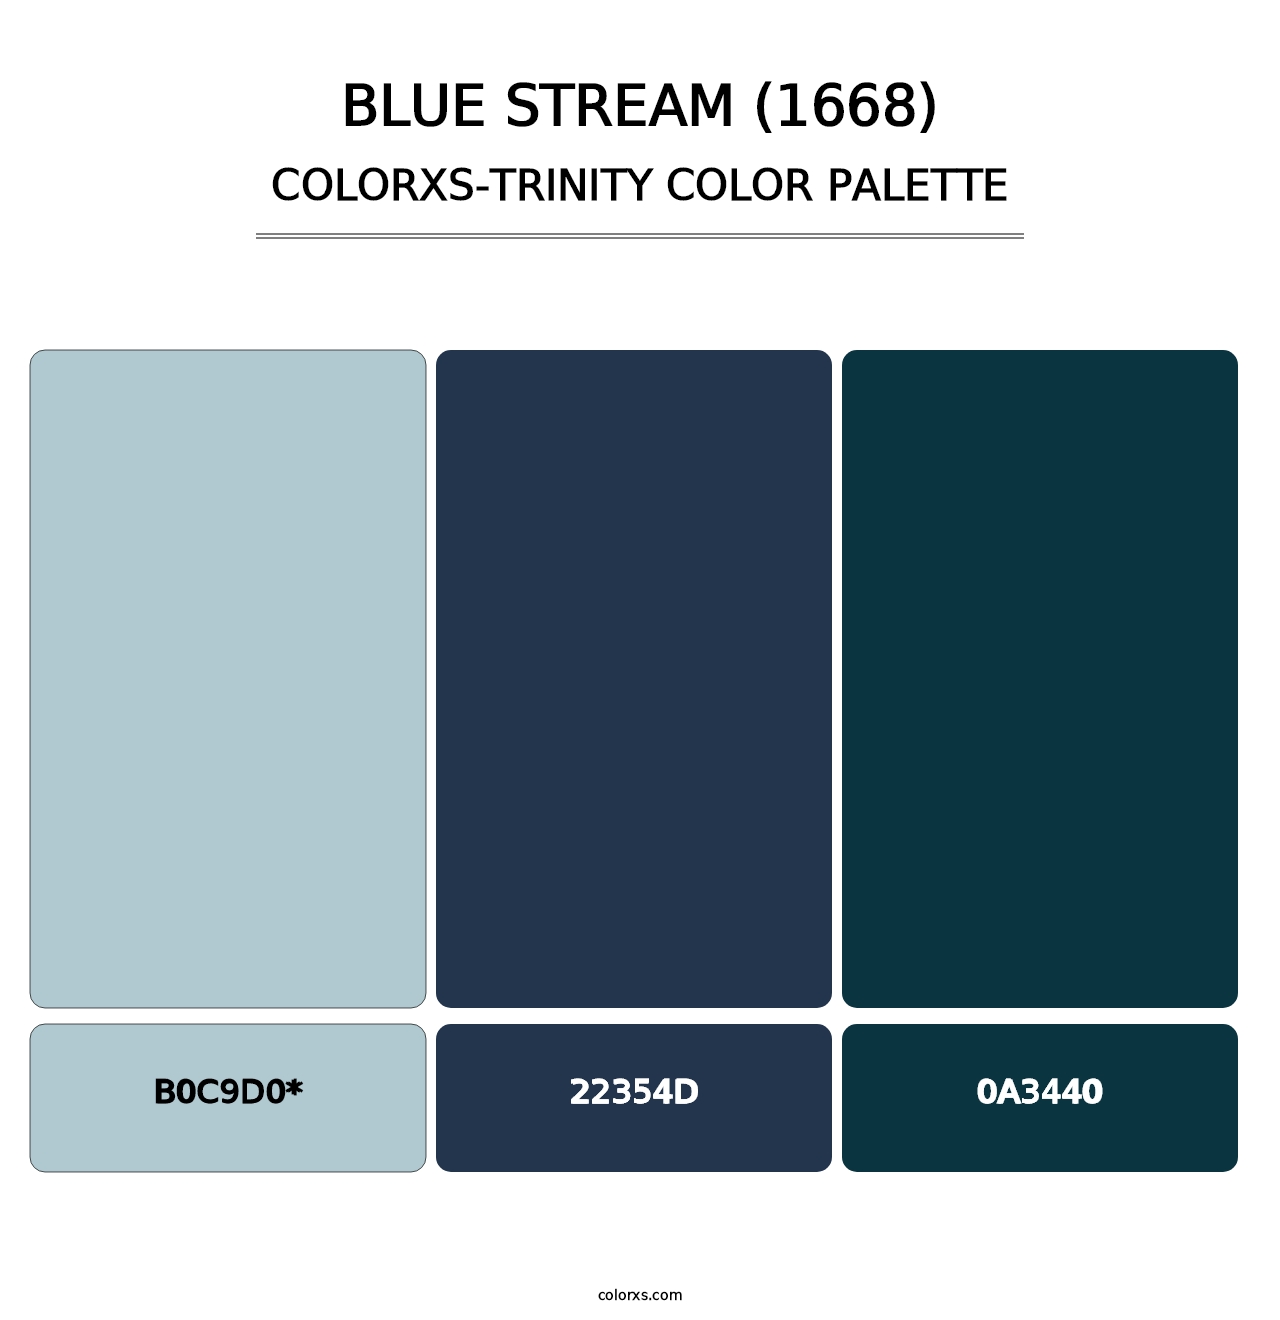 Blue Stream (1668) - Colorxs Trinity Palette